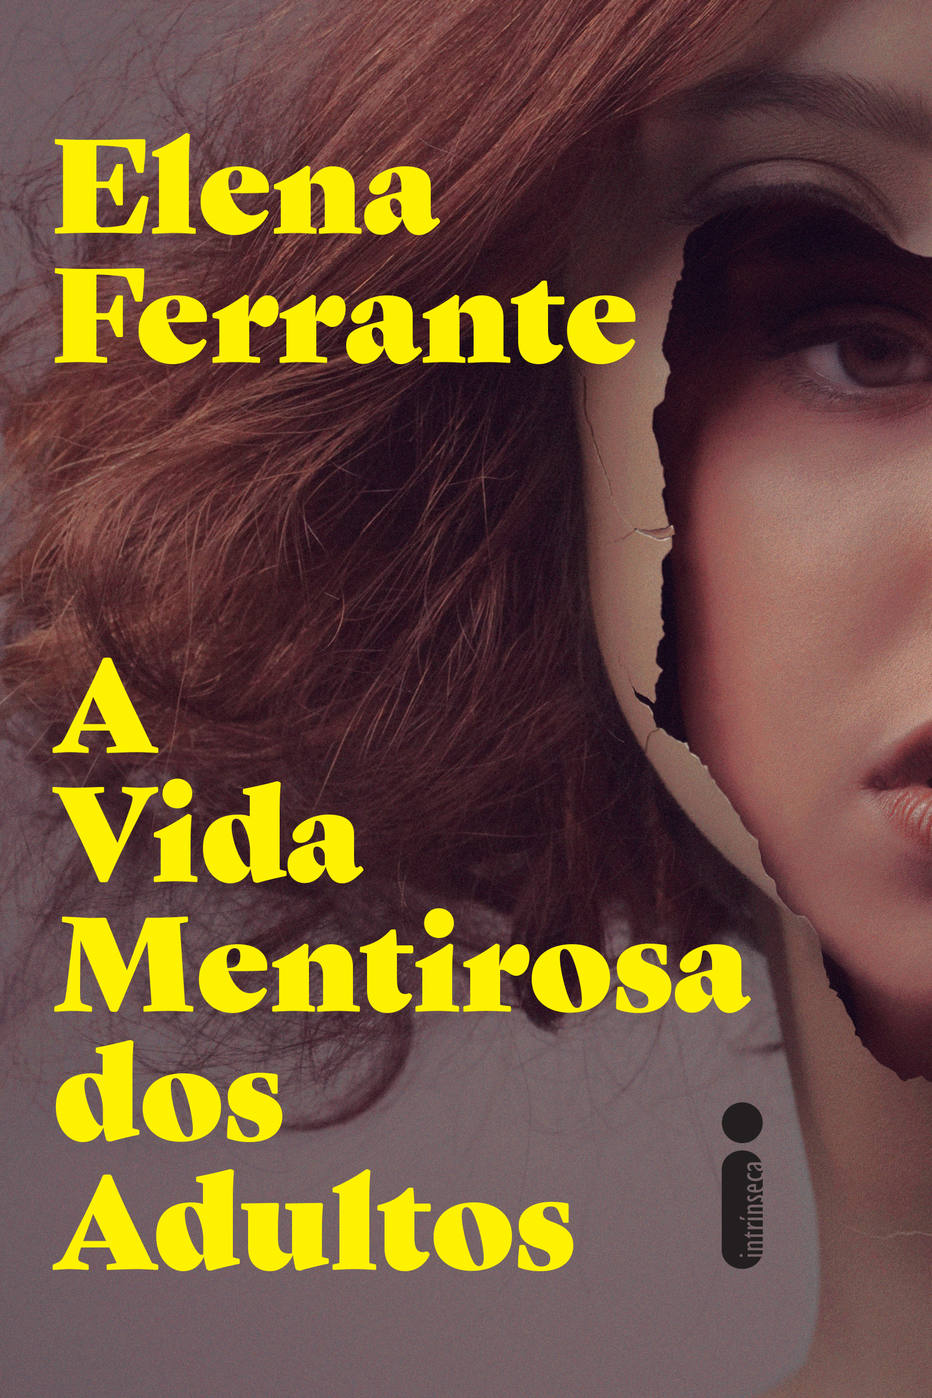 Elena Ferrante - 